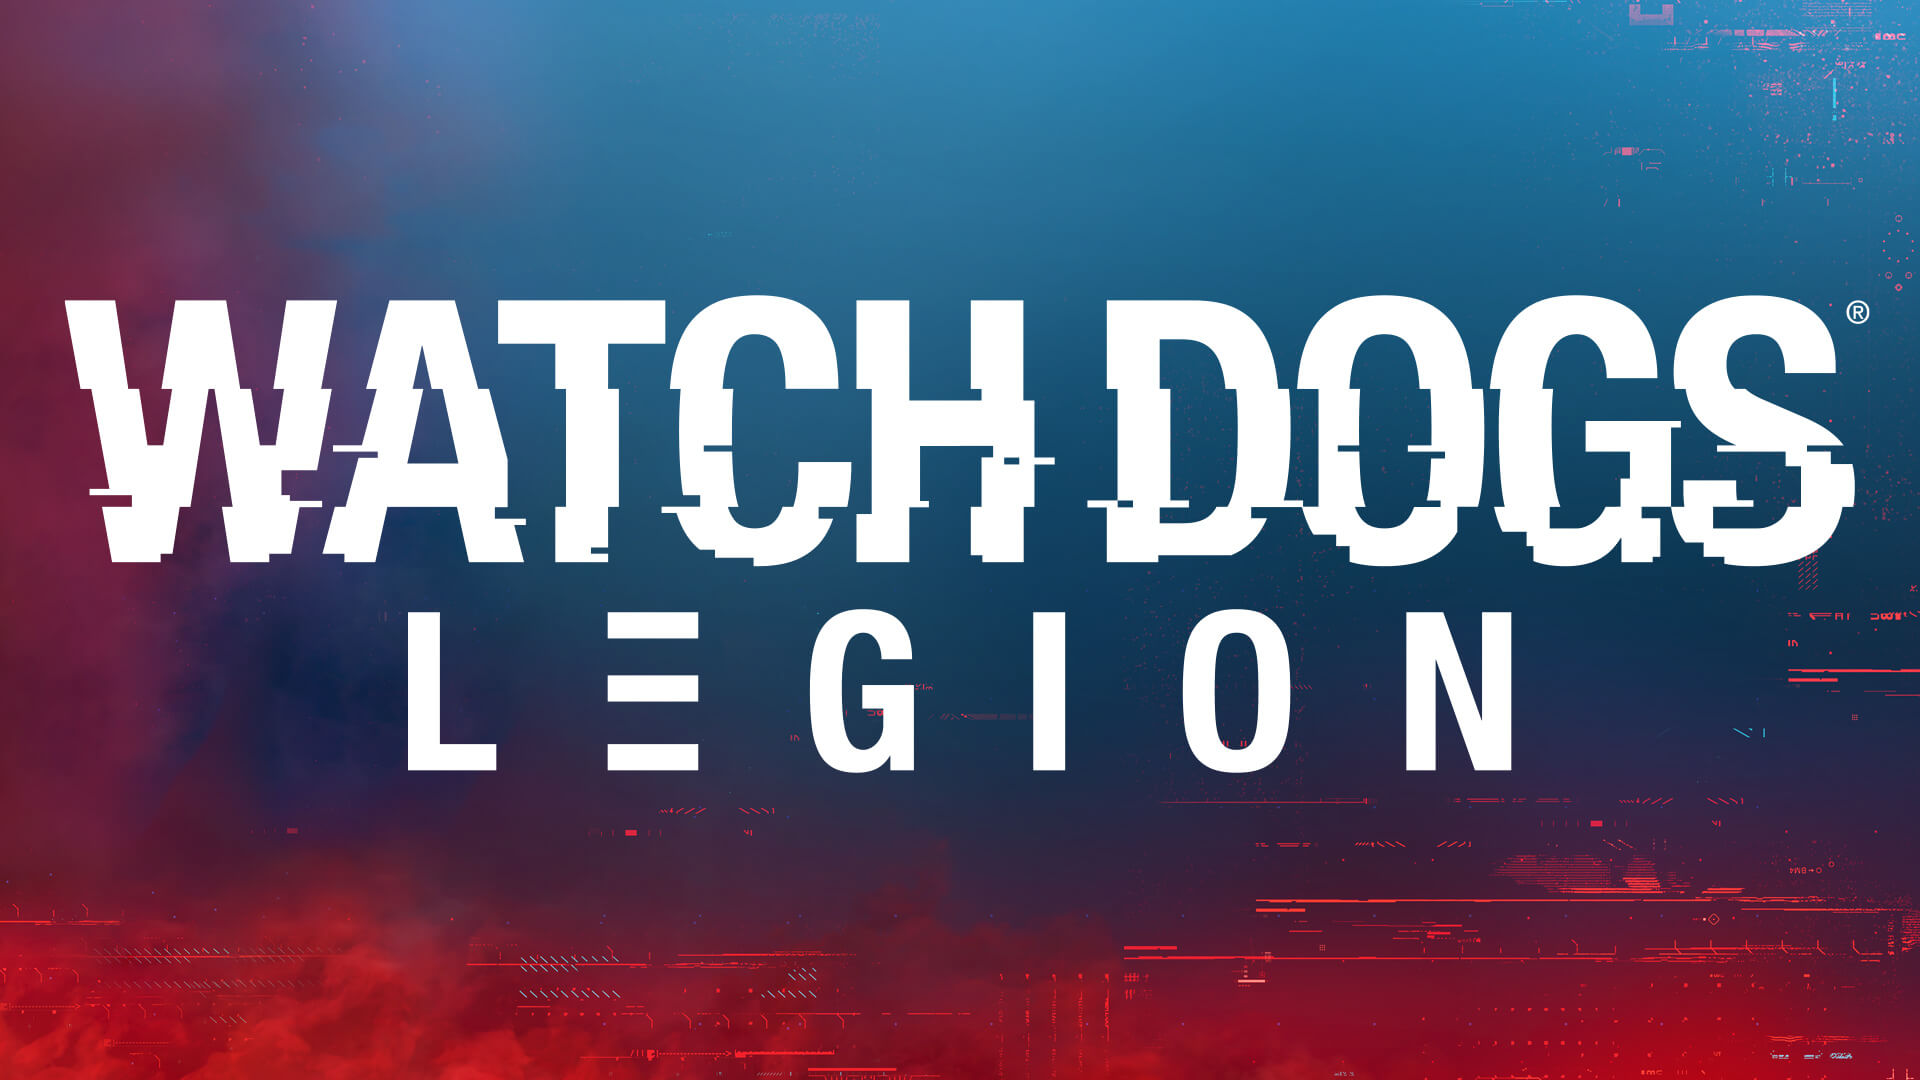   Watch Dogs Legion -      GAMMAGAMES.RU